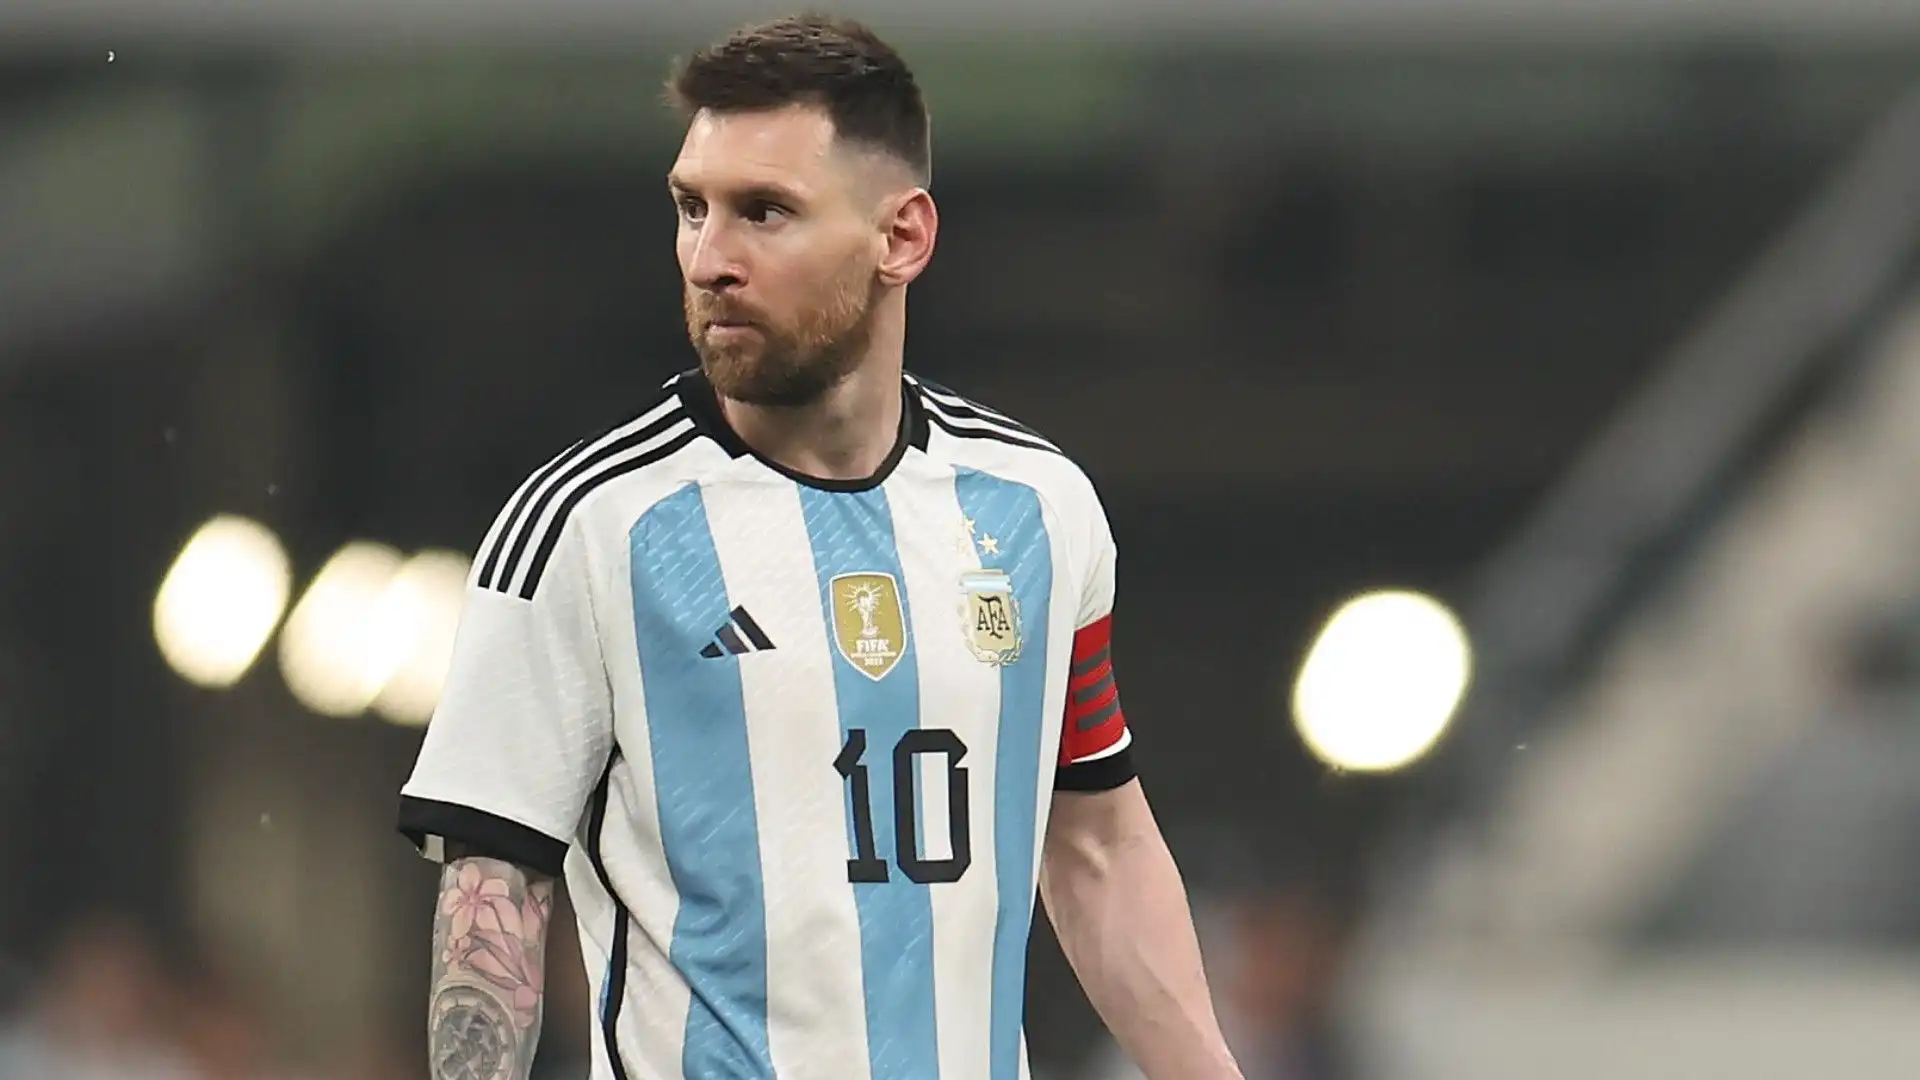 10- Apre la Top 10 l'eterno Lionel Messi